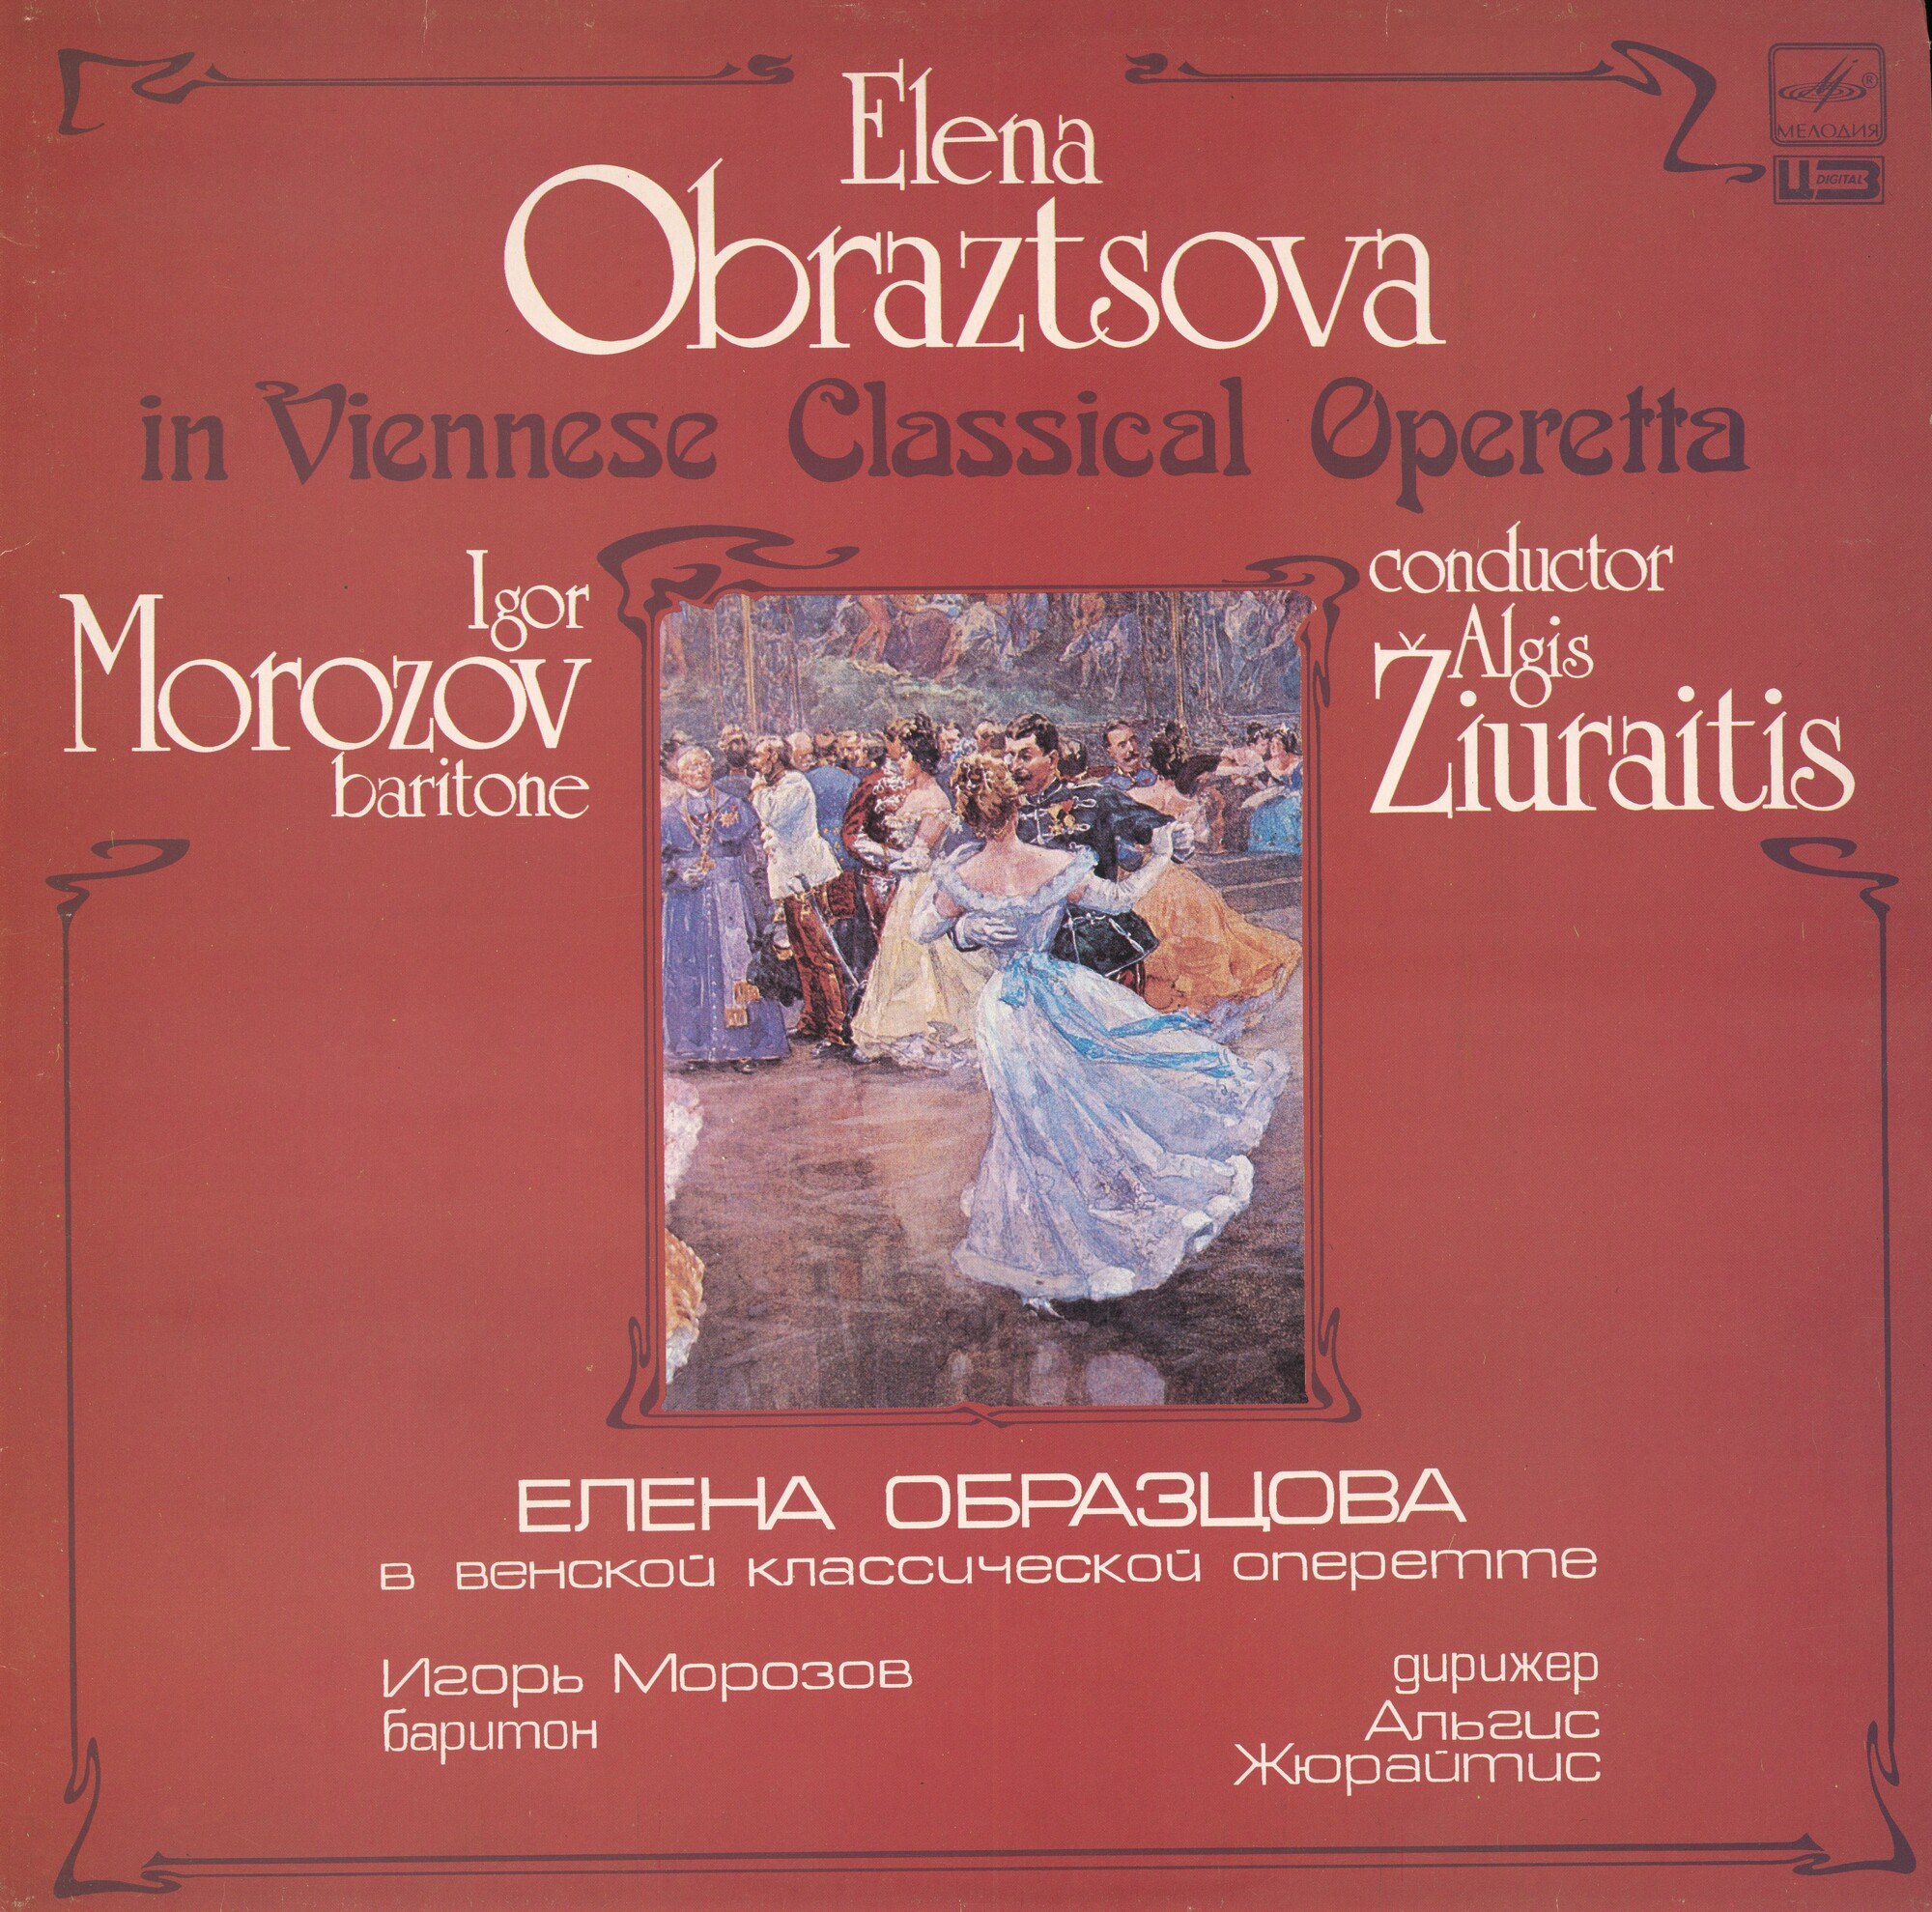 Е. ОБРАЗЦОВА (меццо-сопрано): "Елена Образцова в Венской классической оперетте"